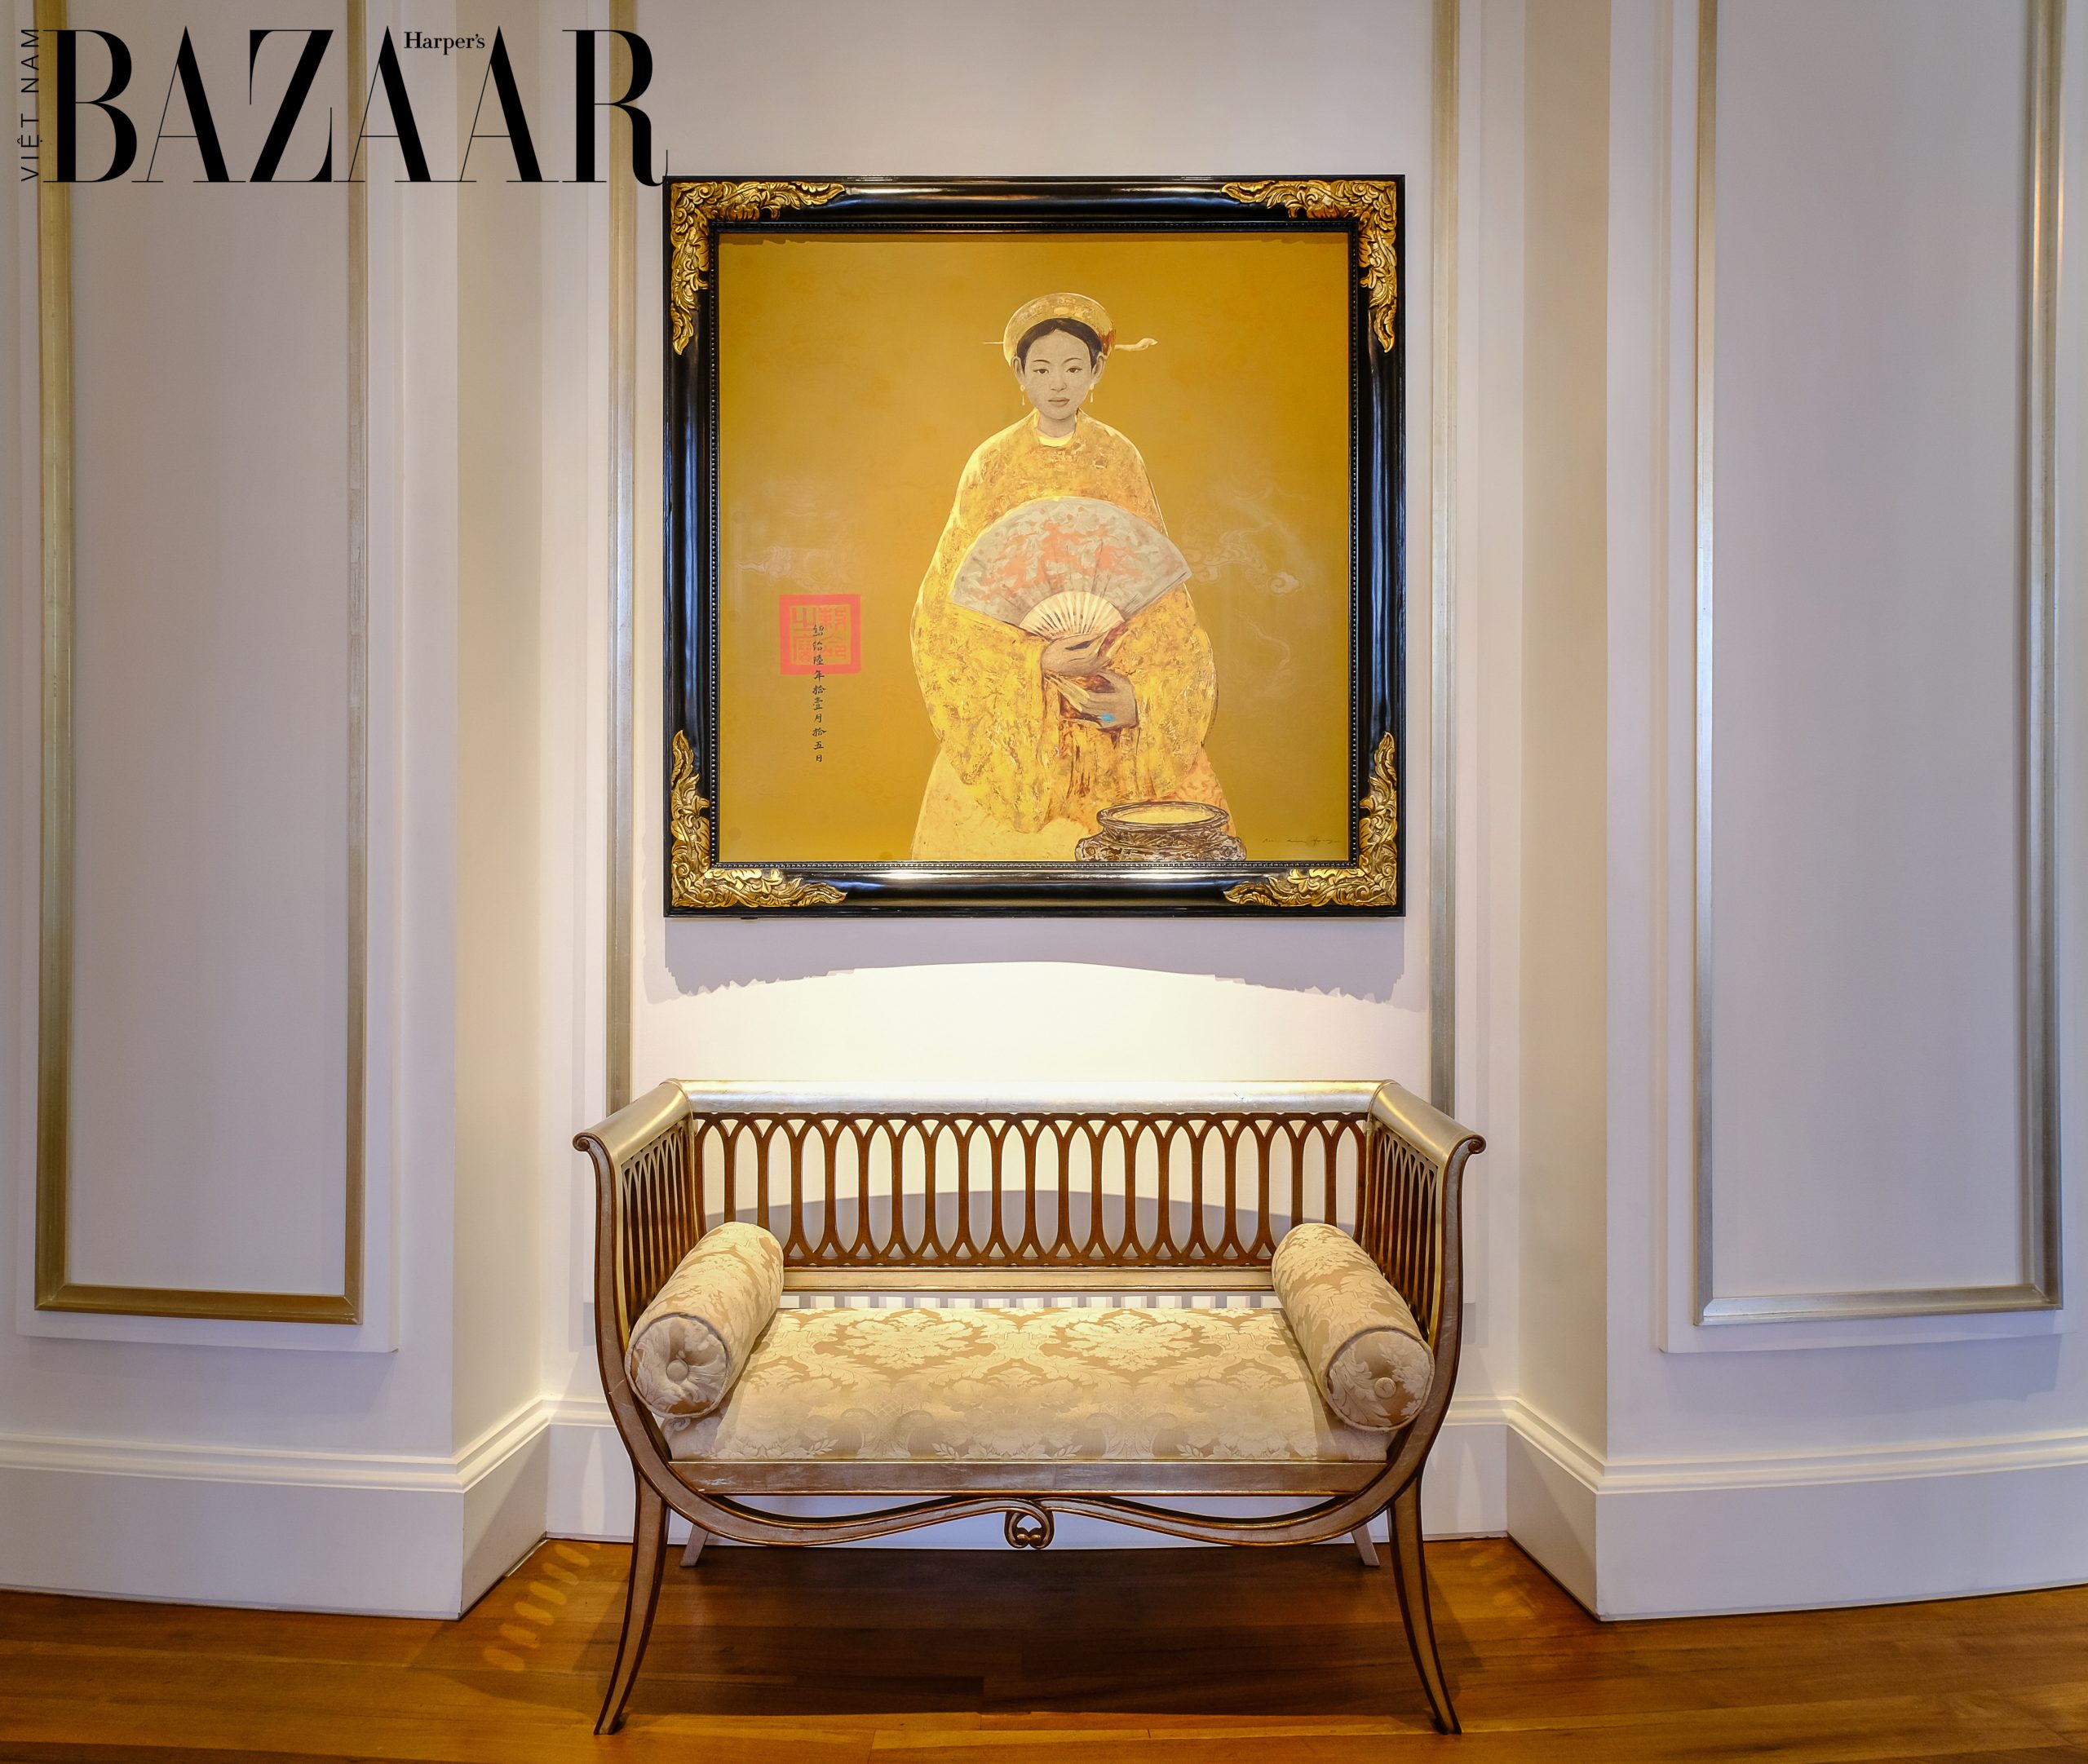 Harper's Bazaar_Chất liệu vải gấm trong nội thất_02